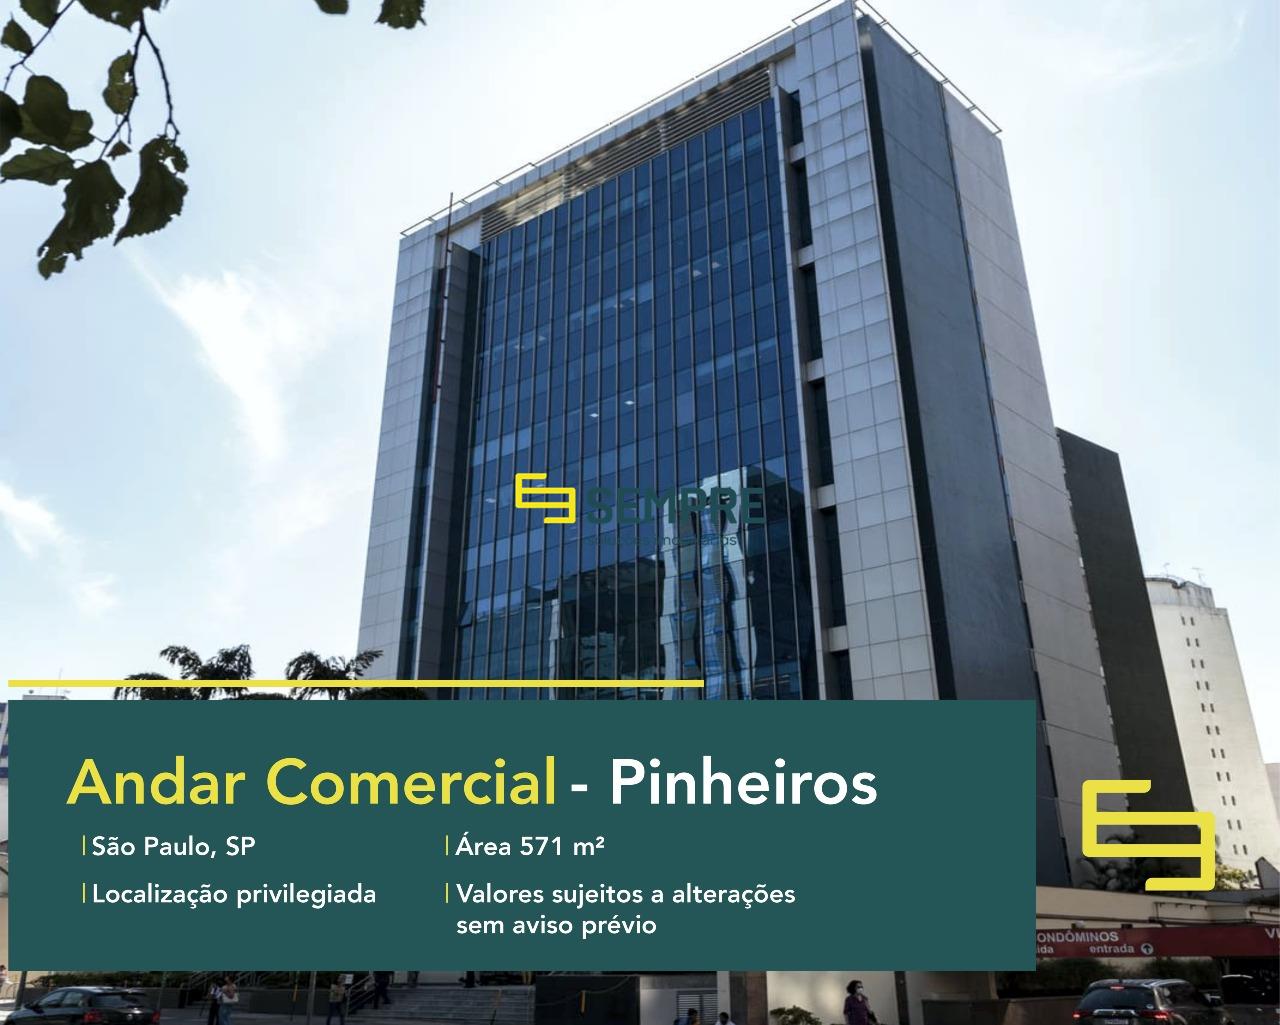 Andar comercial para alugar no Pinheiros em São Paulo, excelente localização. O estabelecimento comercial conta com área de 571 m².